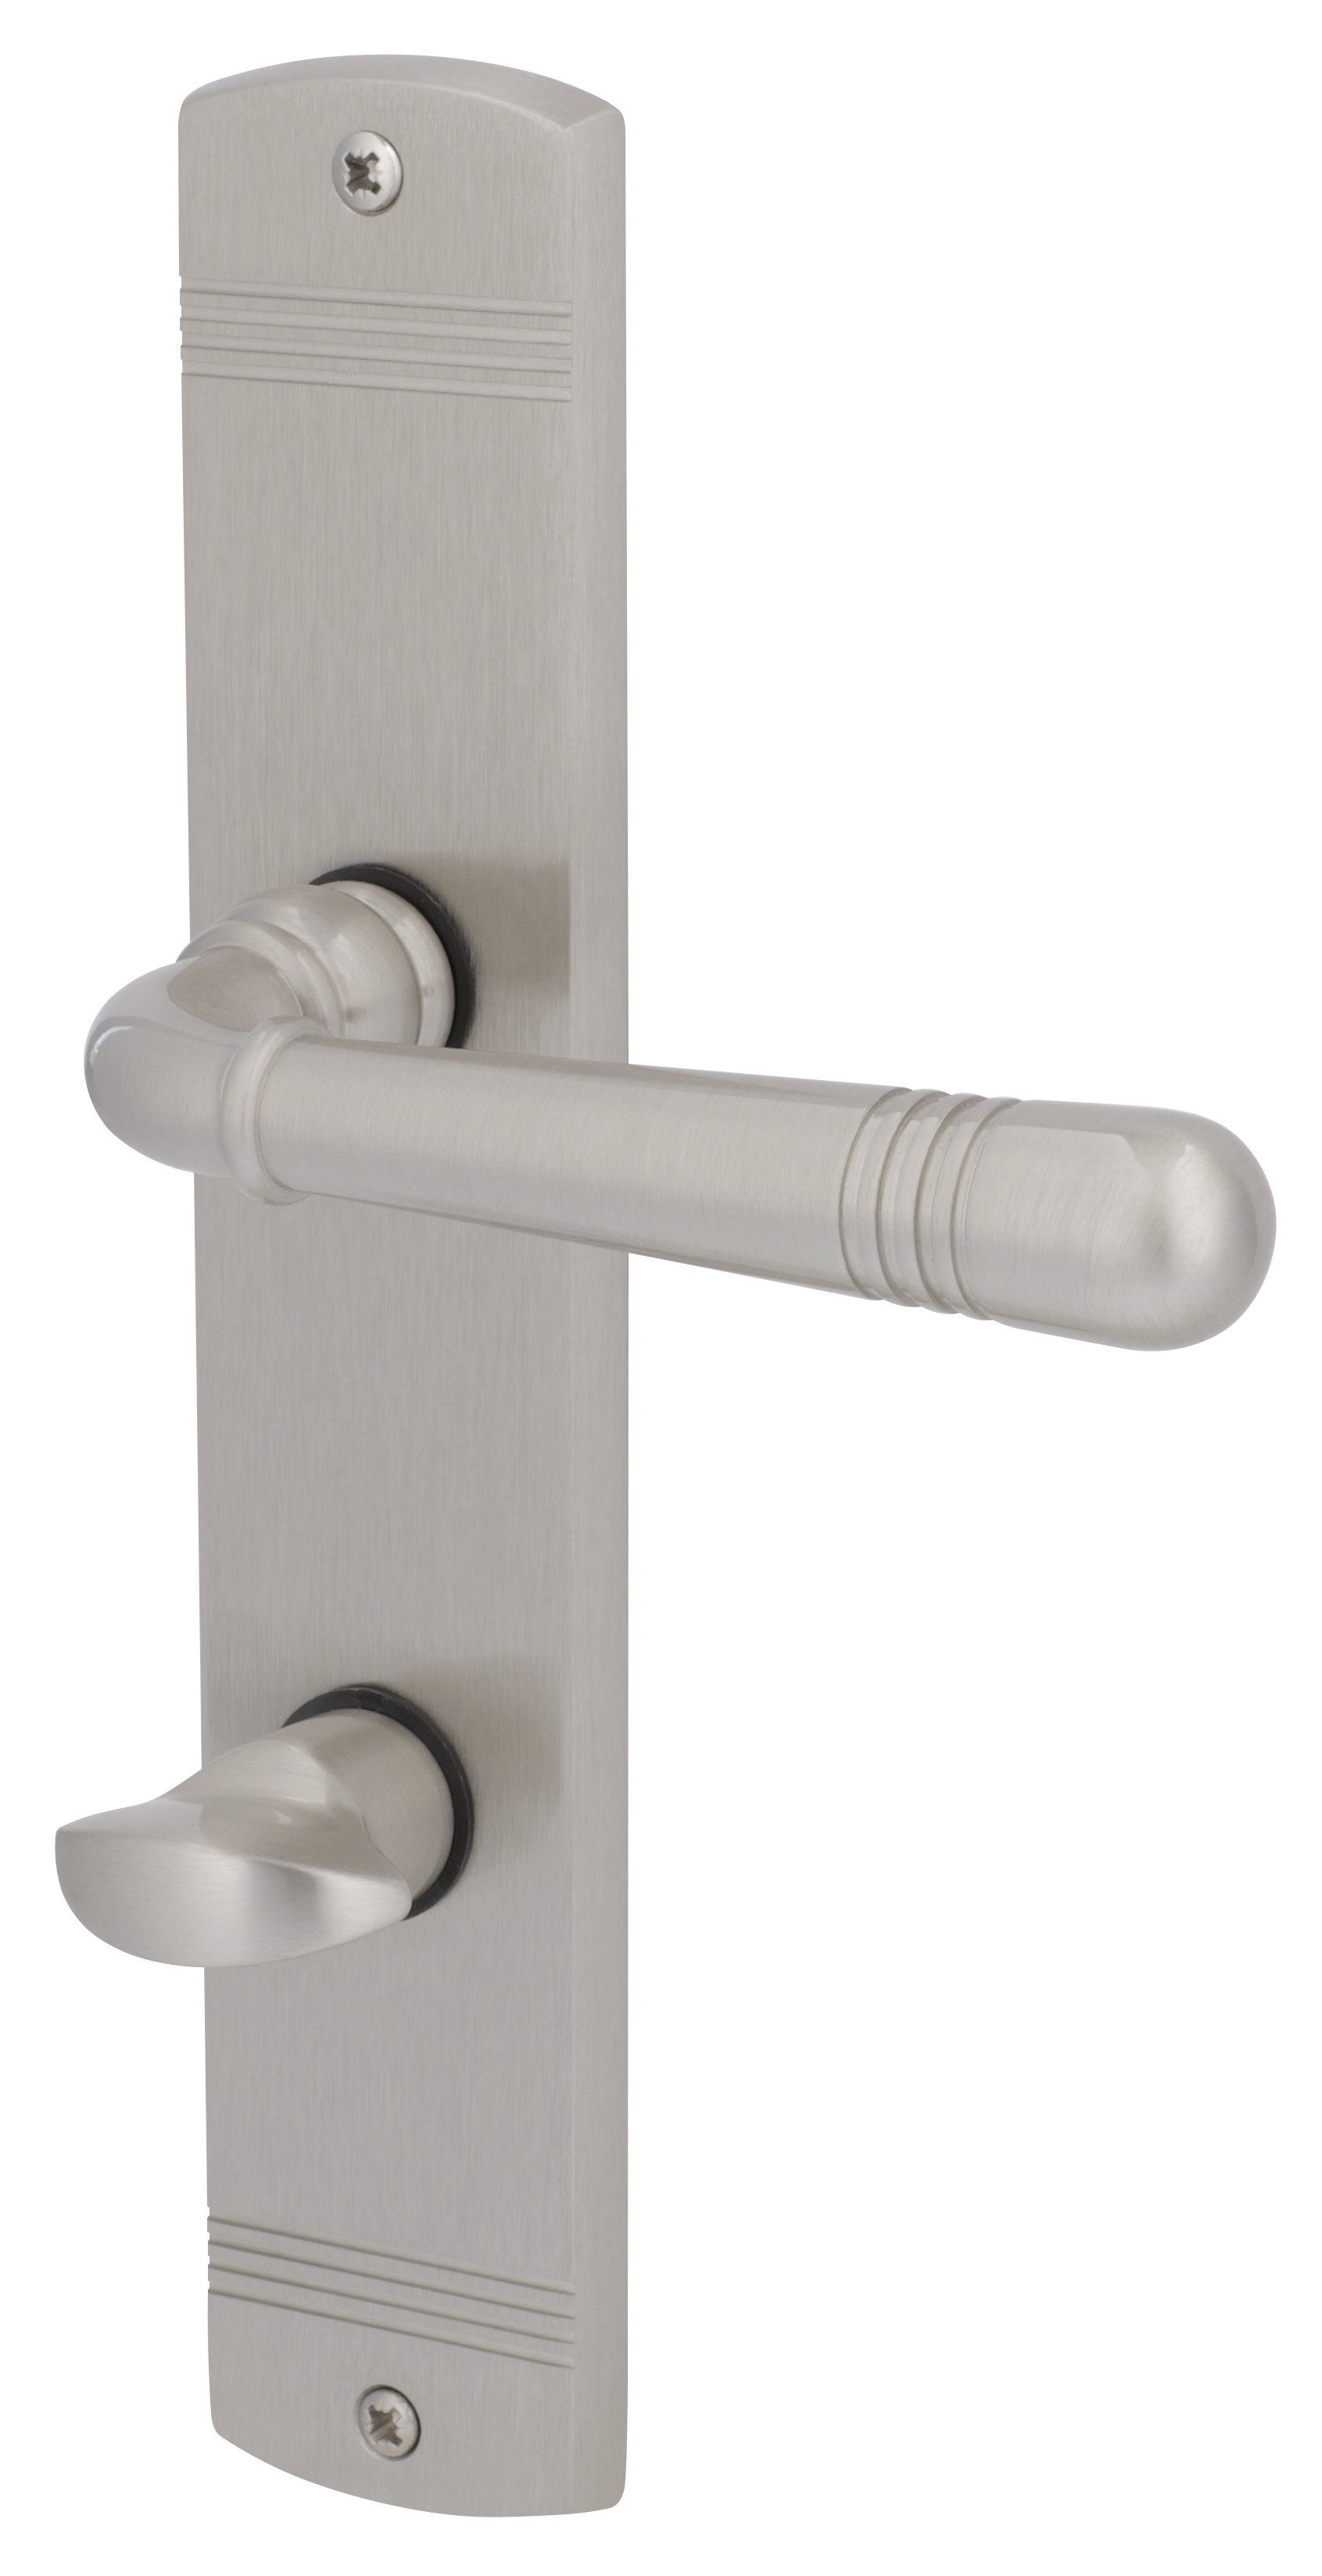 Alpertec Türbeschlag Langschildgarnitur L17/A24 für Bad-WC-Türen inkl. WC-Riegel (1 St), Messing edelstahlfärbig satiniert